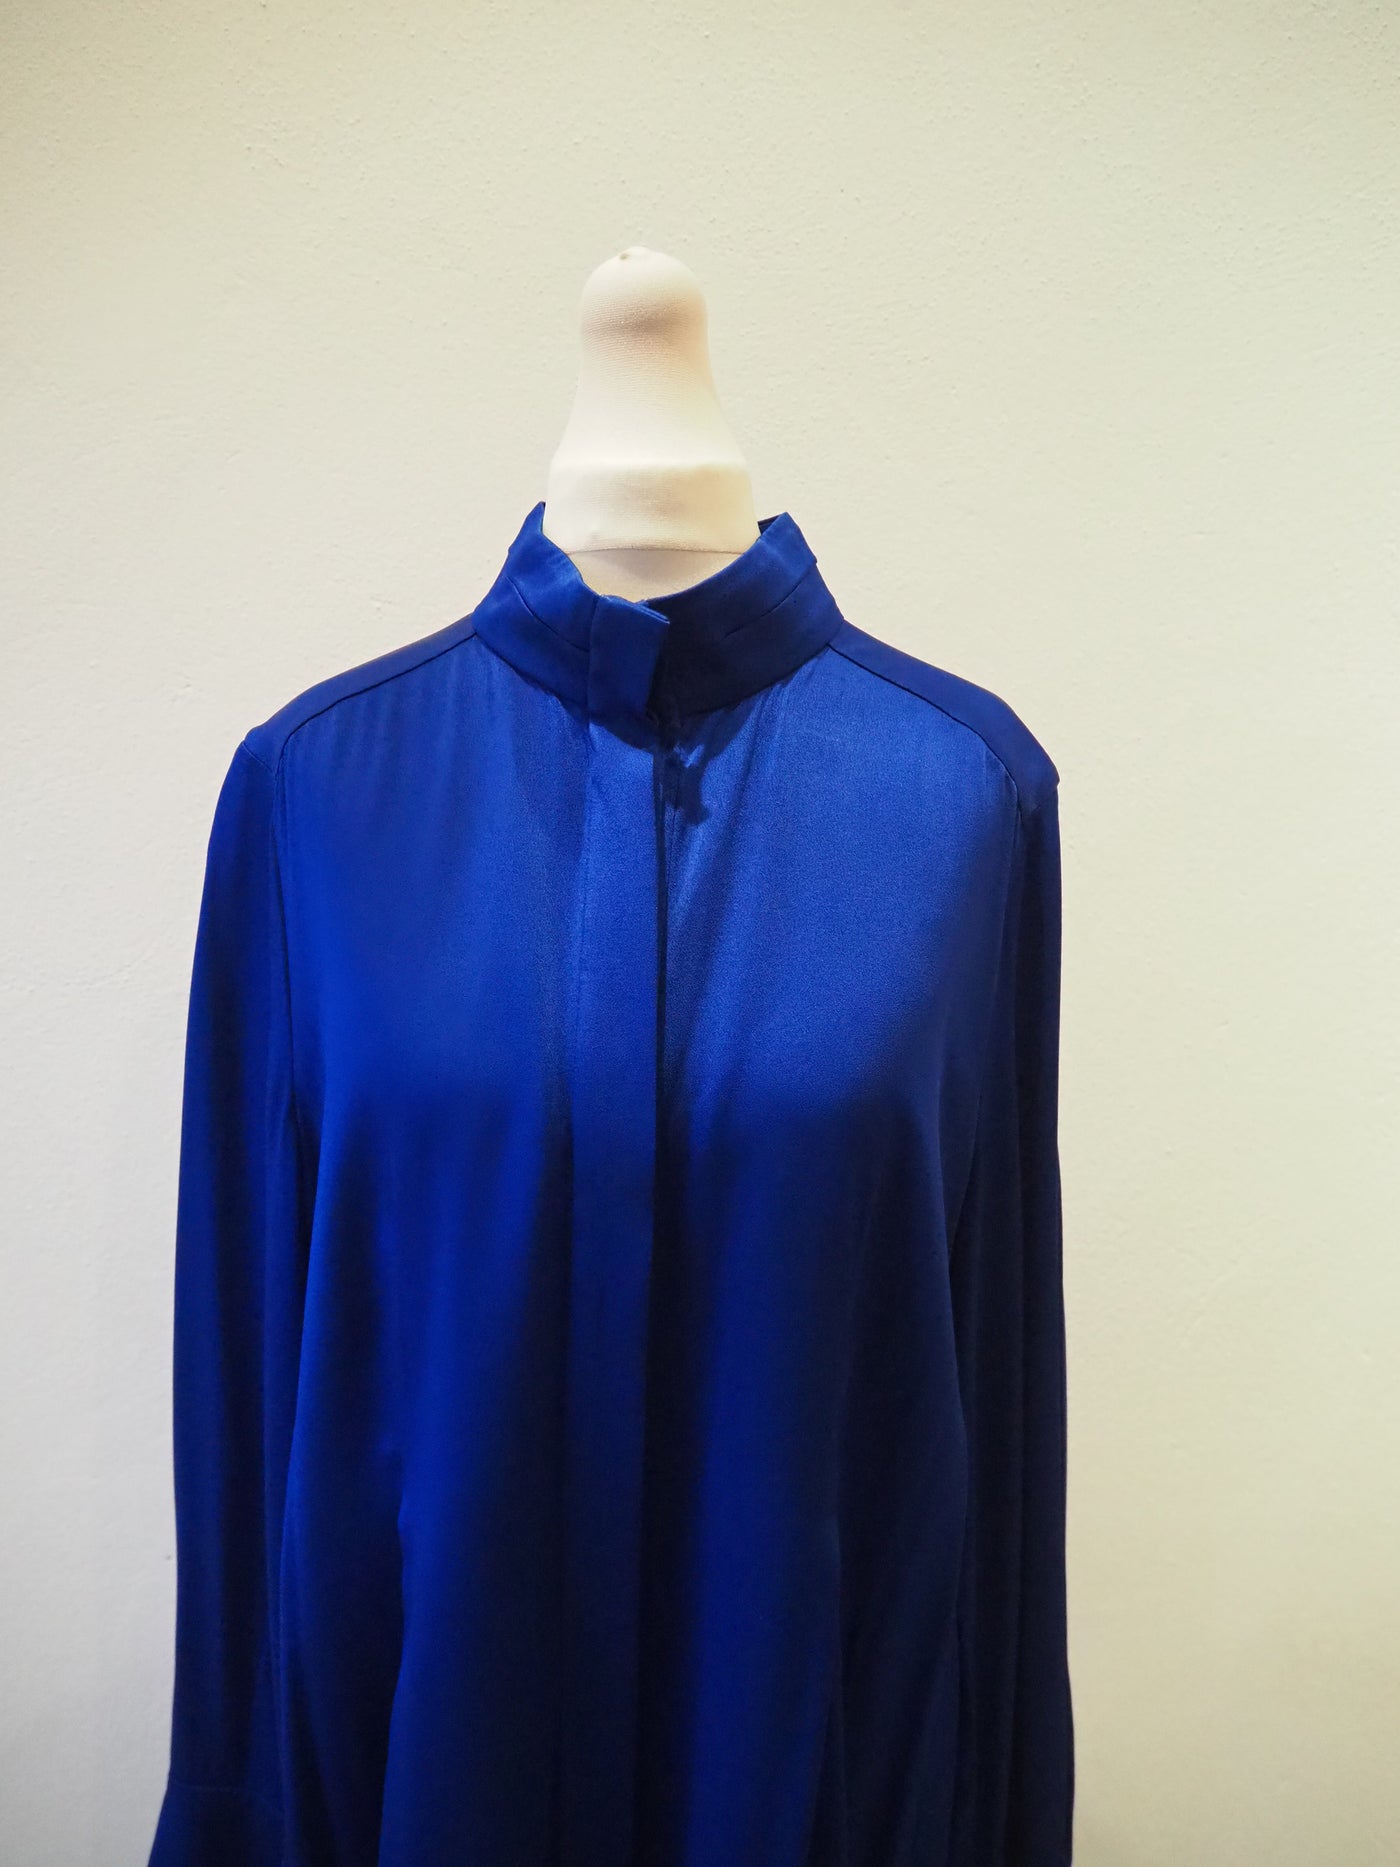 Lanvin Royal Blue Shirt Dress Size 40